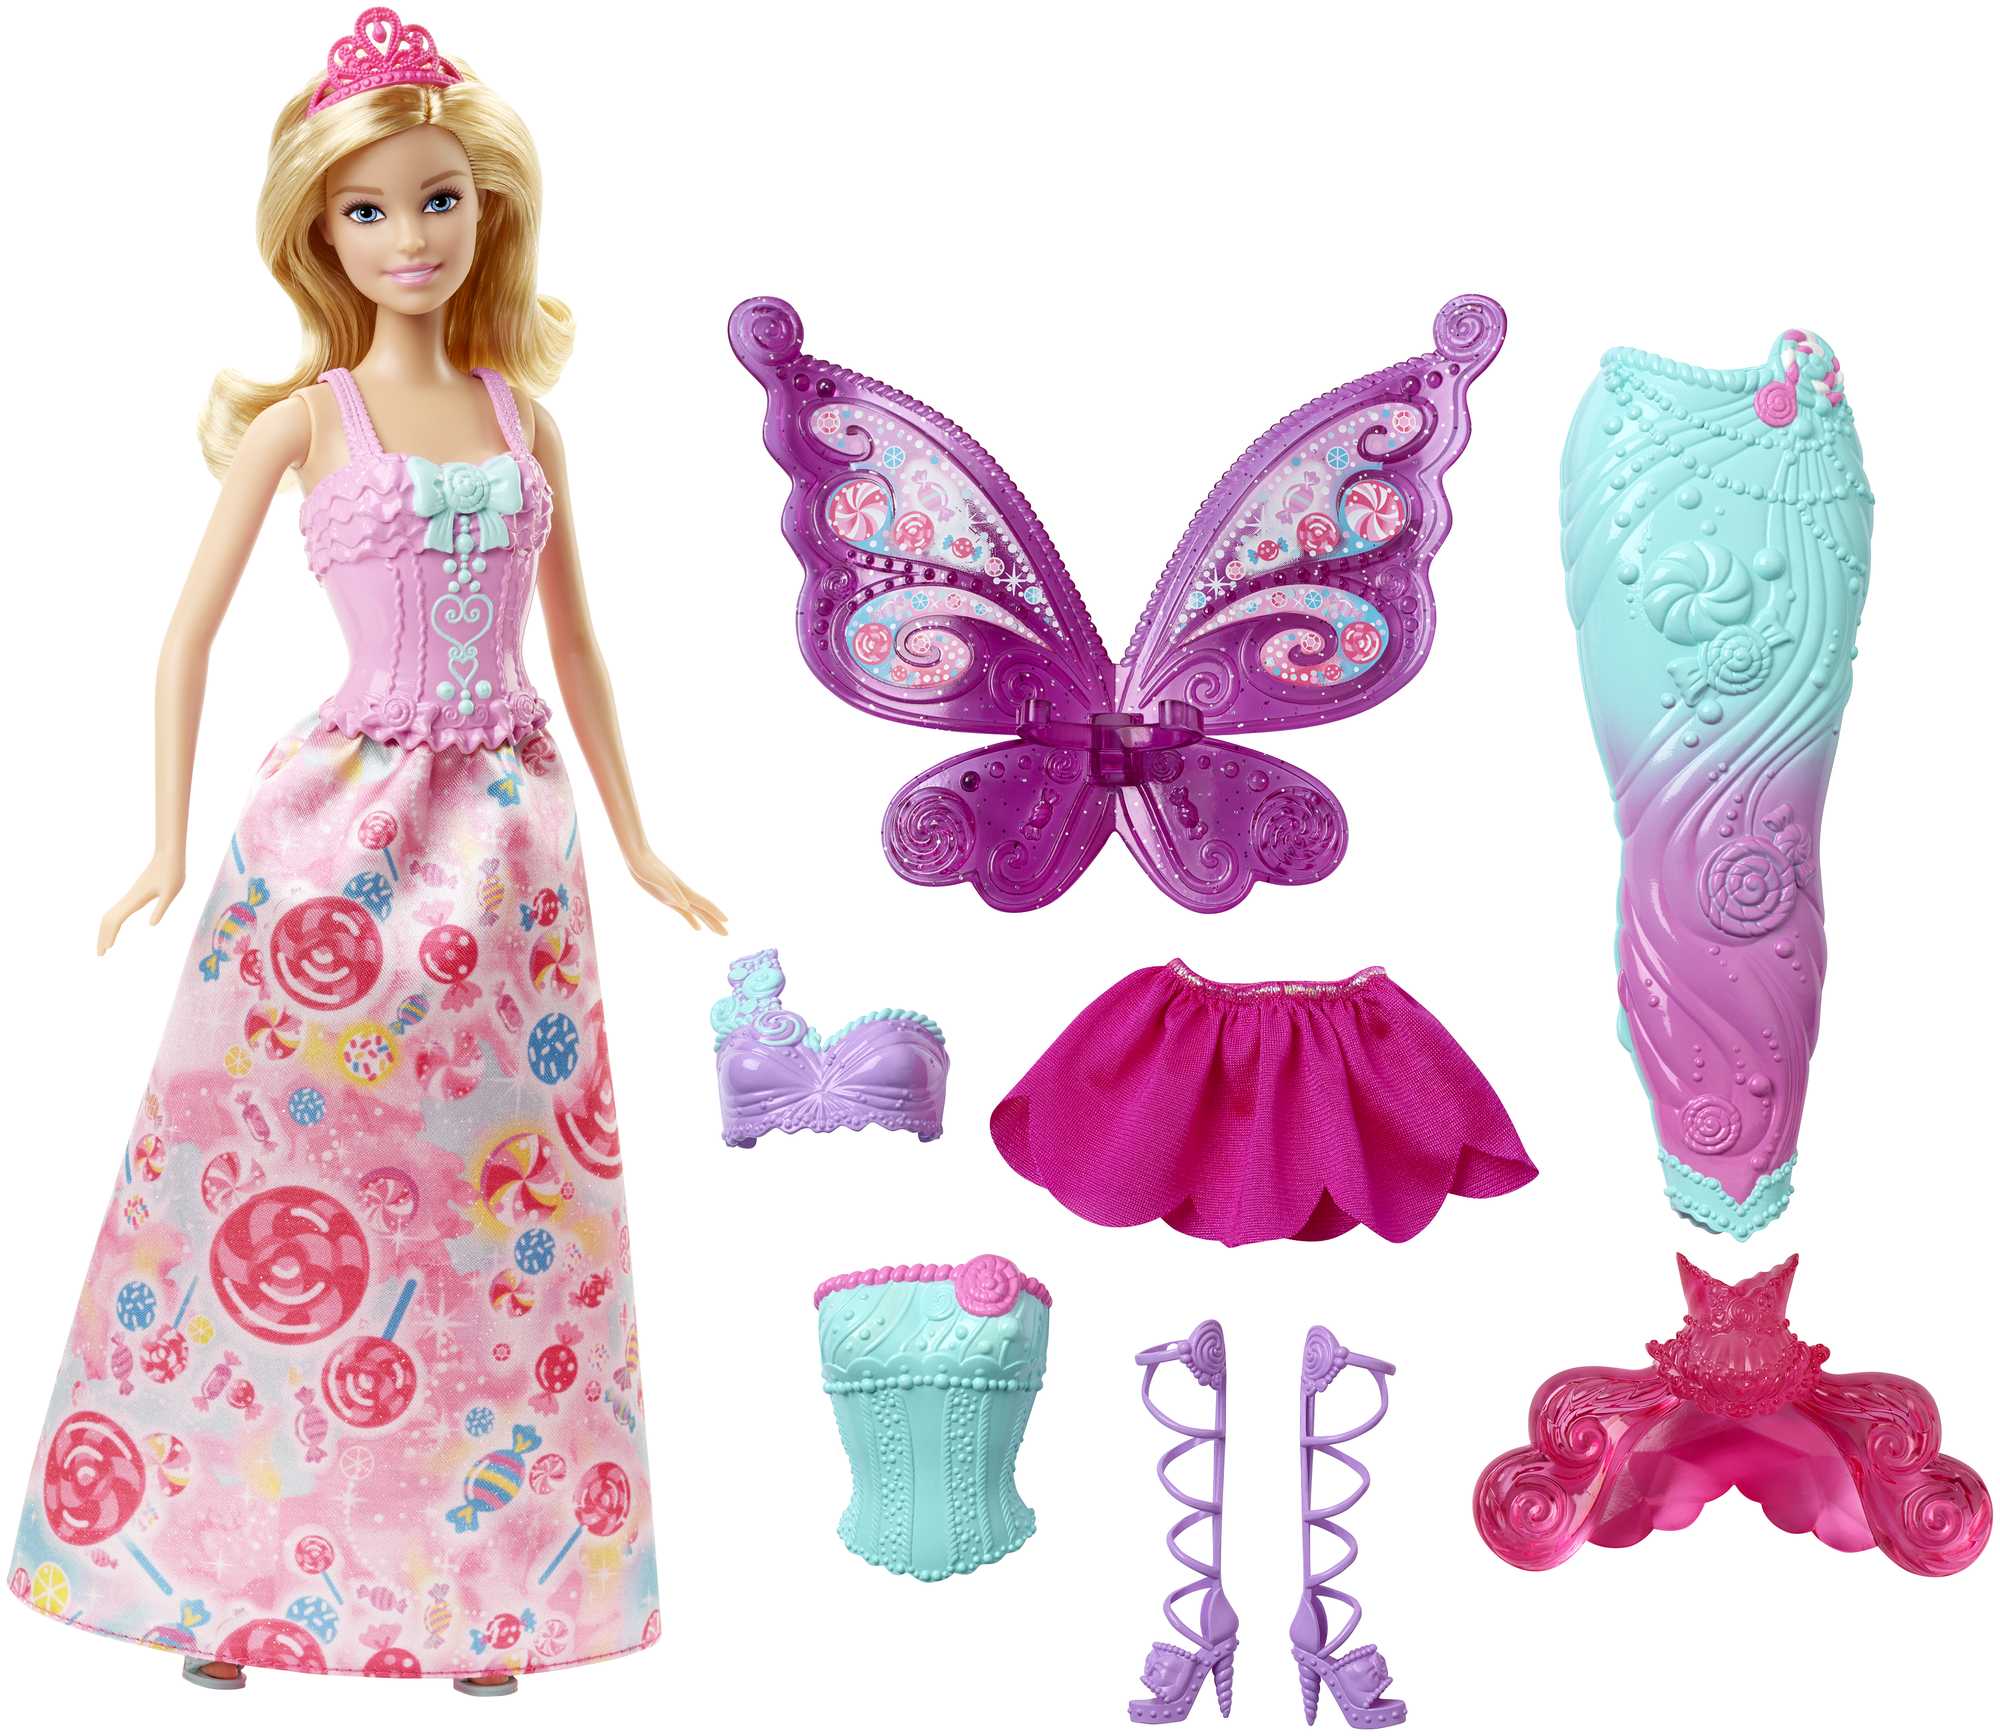 Doll Barbie com 3 roupas de fantasia e acessórios, incluindo Mermaid Tail & Fairy Wings